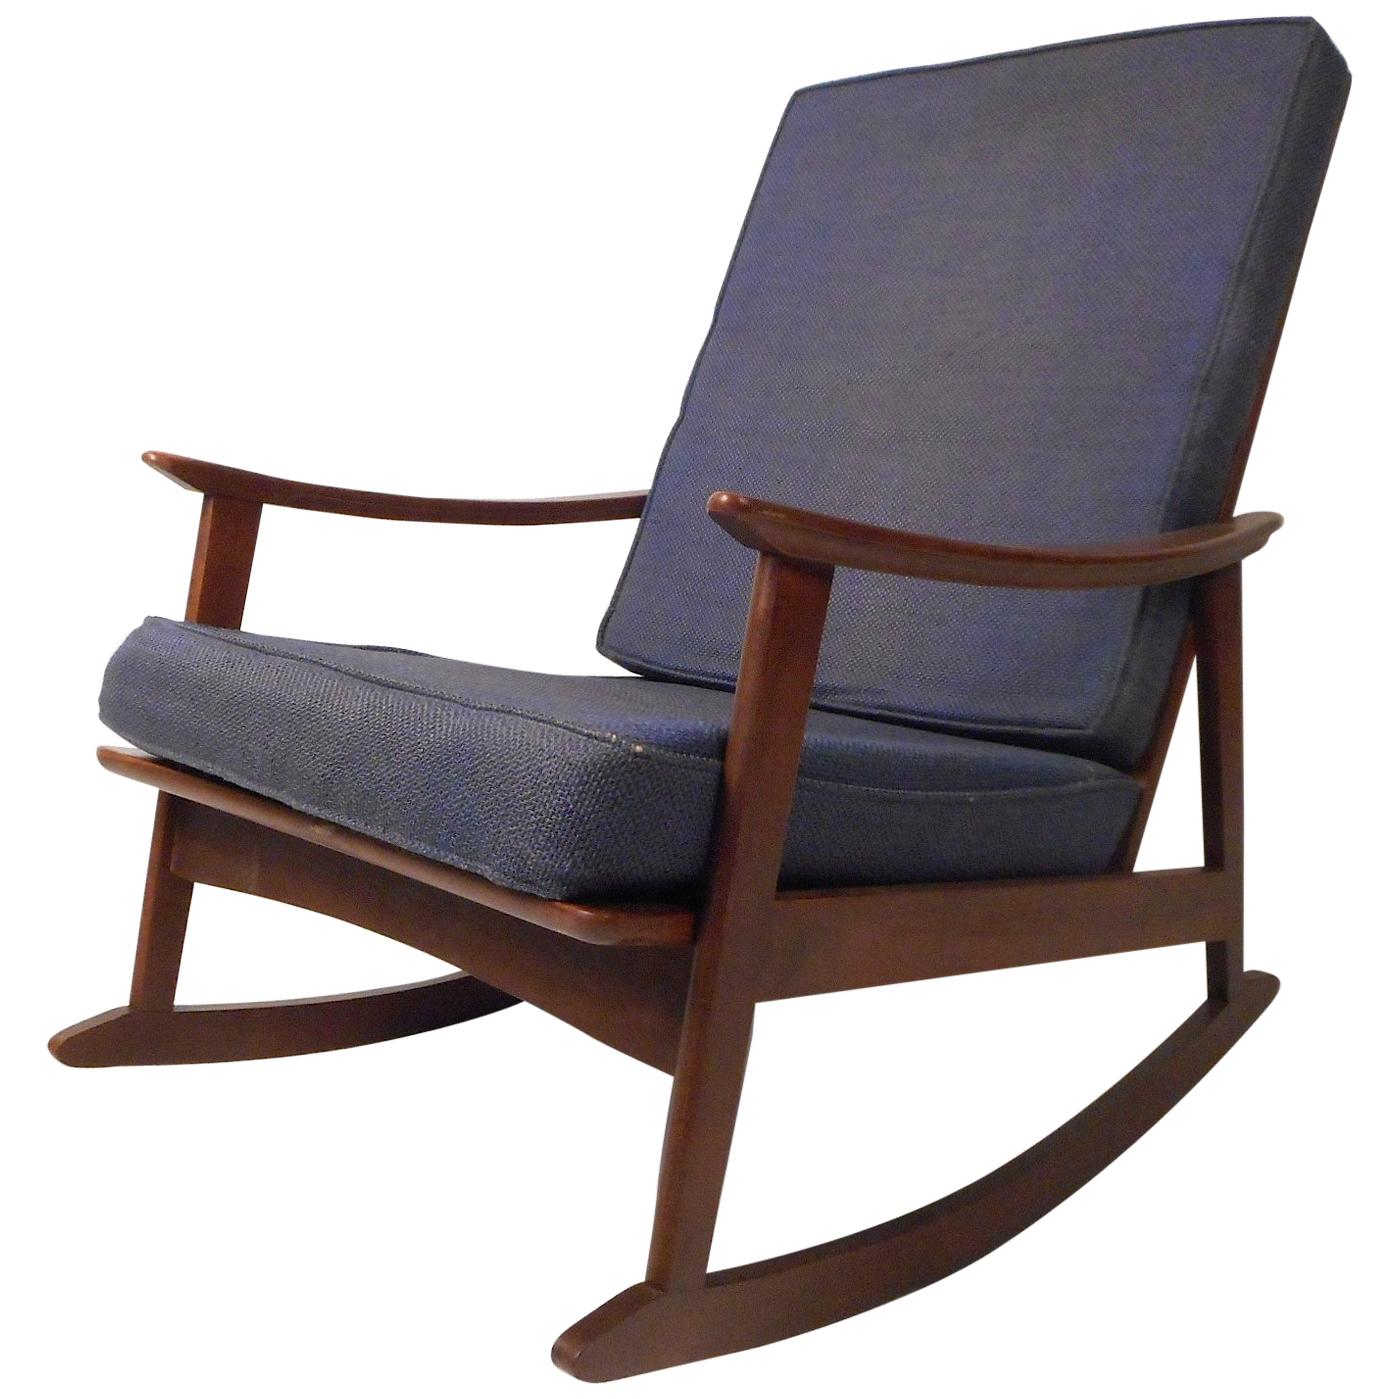 Mid-Century Modern Rocking Chair